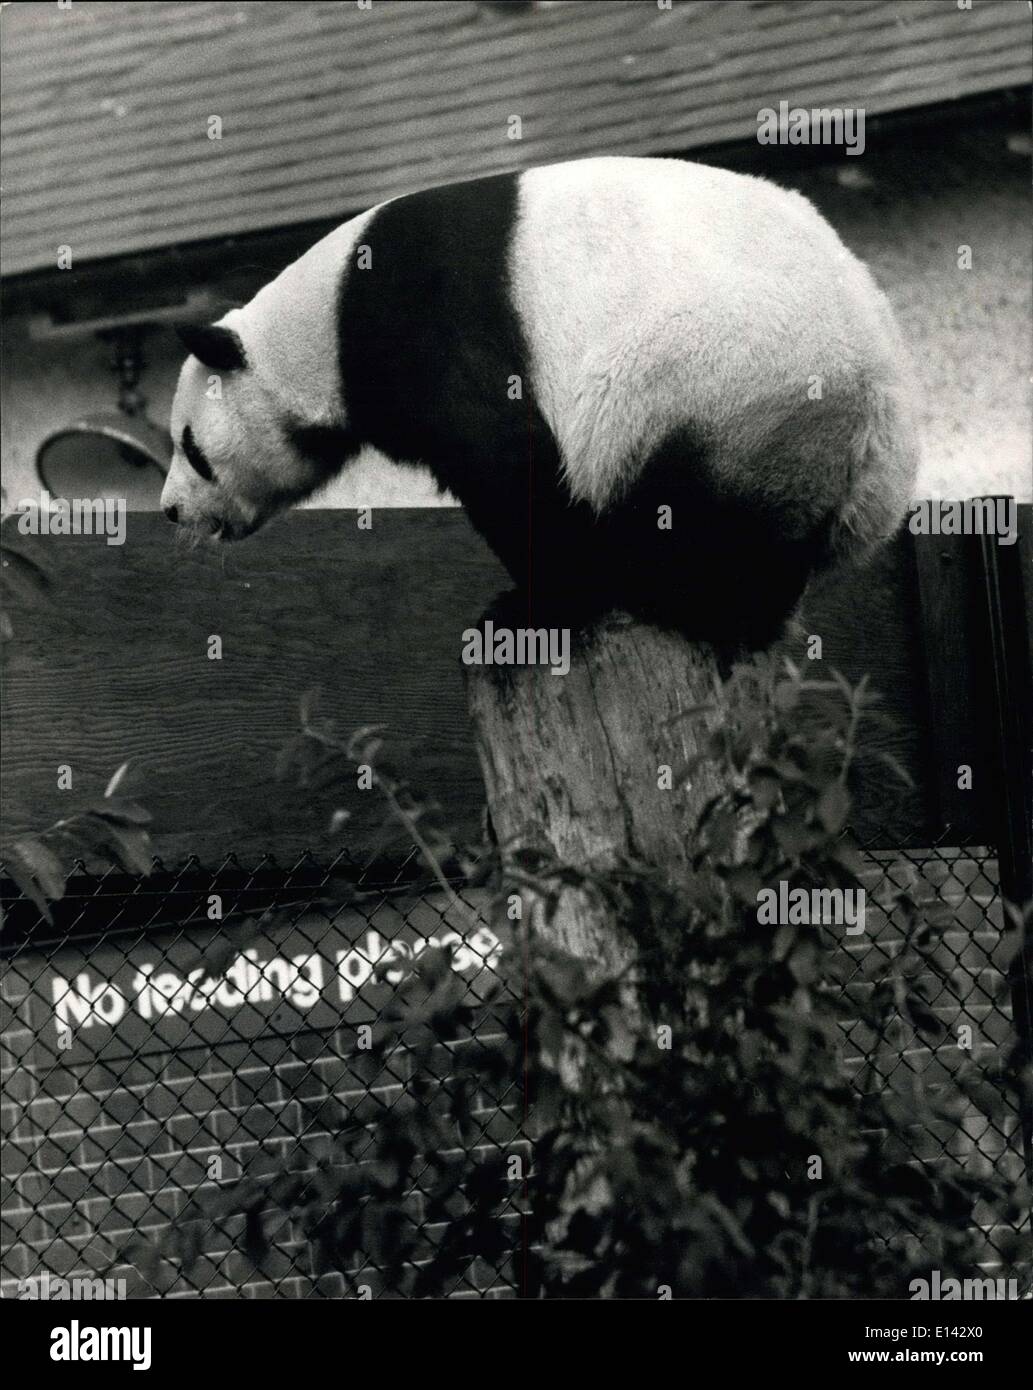 31. März 2012 - The Giant Panda Balz im London Zoo.: ein-An der russischen Riesenpanda im Londoner Zoo weiterhin seine Werbung mit dem Londoner Zoo weiblich, Chi-Chi - nach ihrer unproduktive trifft in Moskau vor zwei Jahren. Sie sind noch durch einen Drahtzaun getrennt, die ihren Paddock teilt. Foto zeigt An-An die russische Riesenpanda - klettert an die Spitze der Stamm des Baumes im London Zoo - wahrscheinlich, um einen Blick auf Chichi. Stockfoto